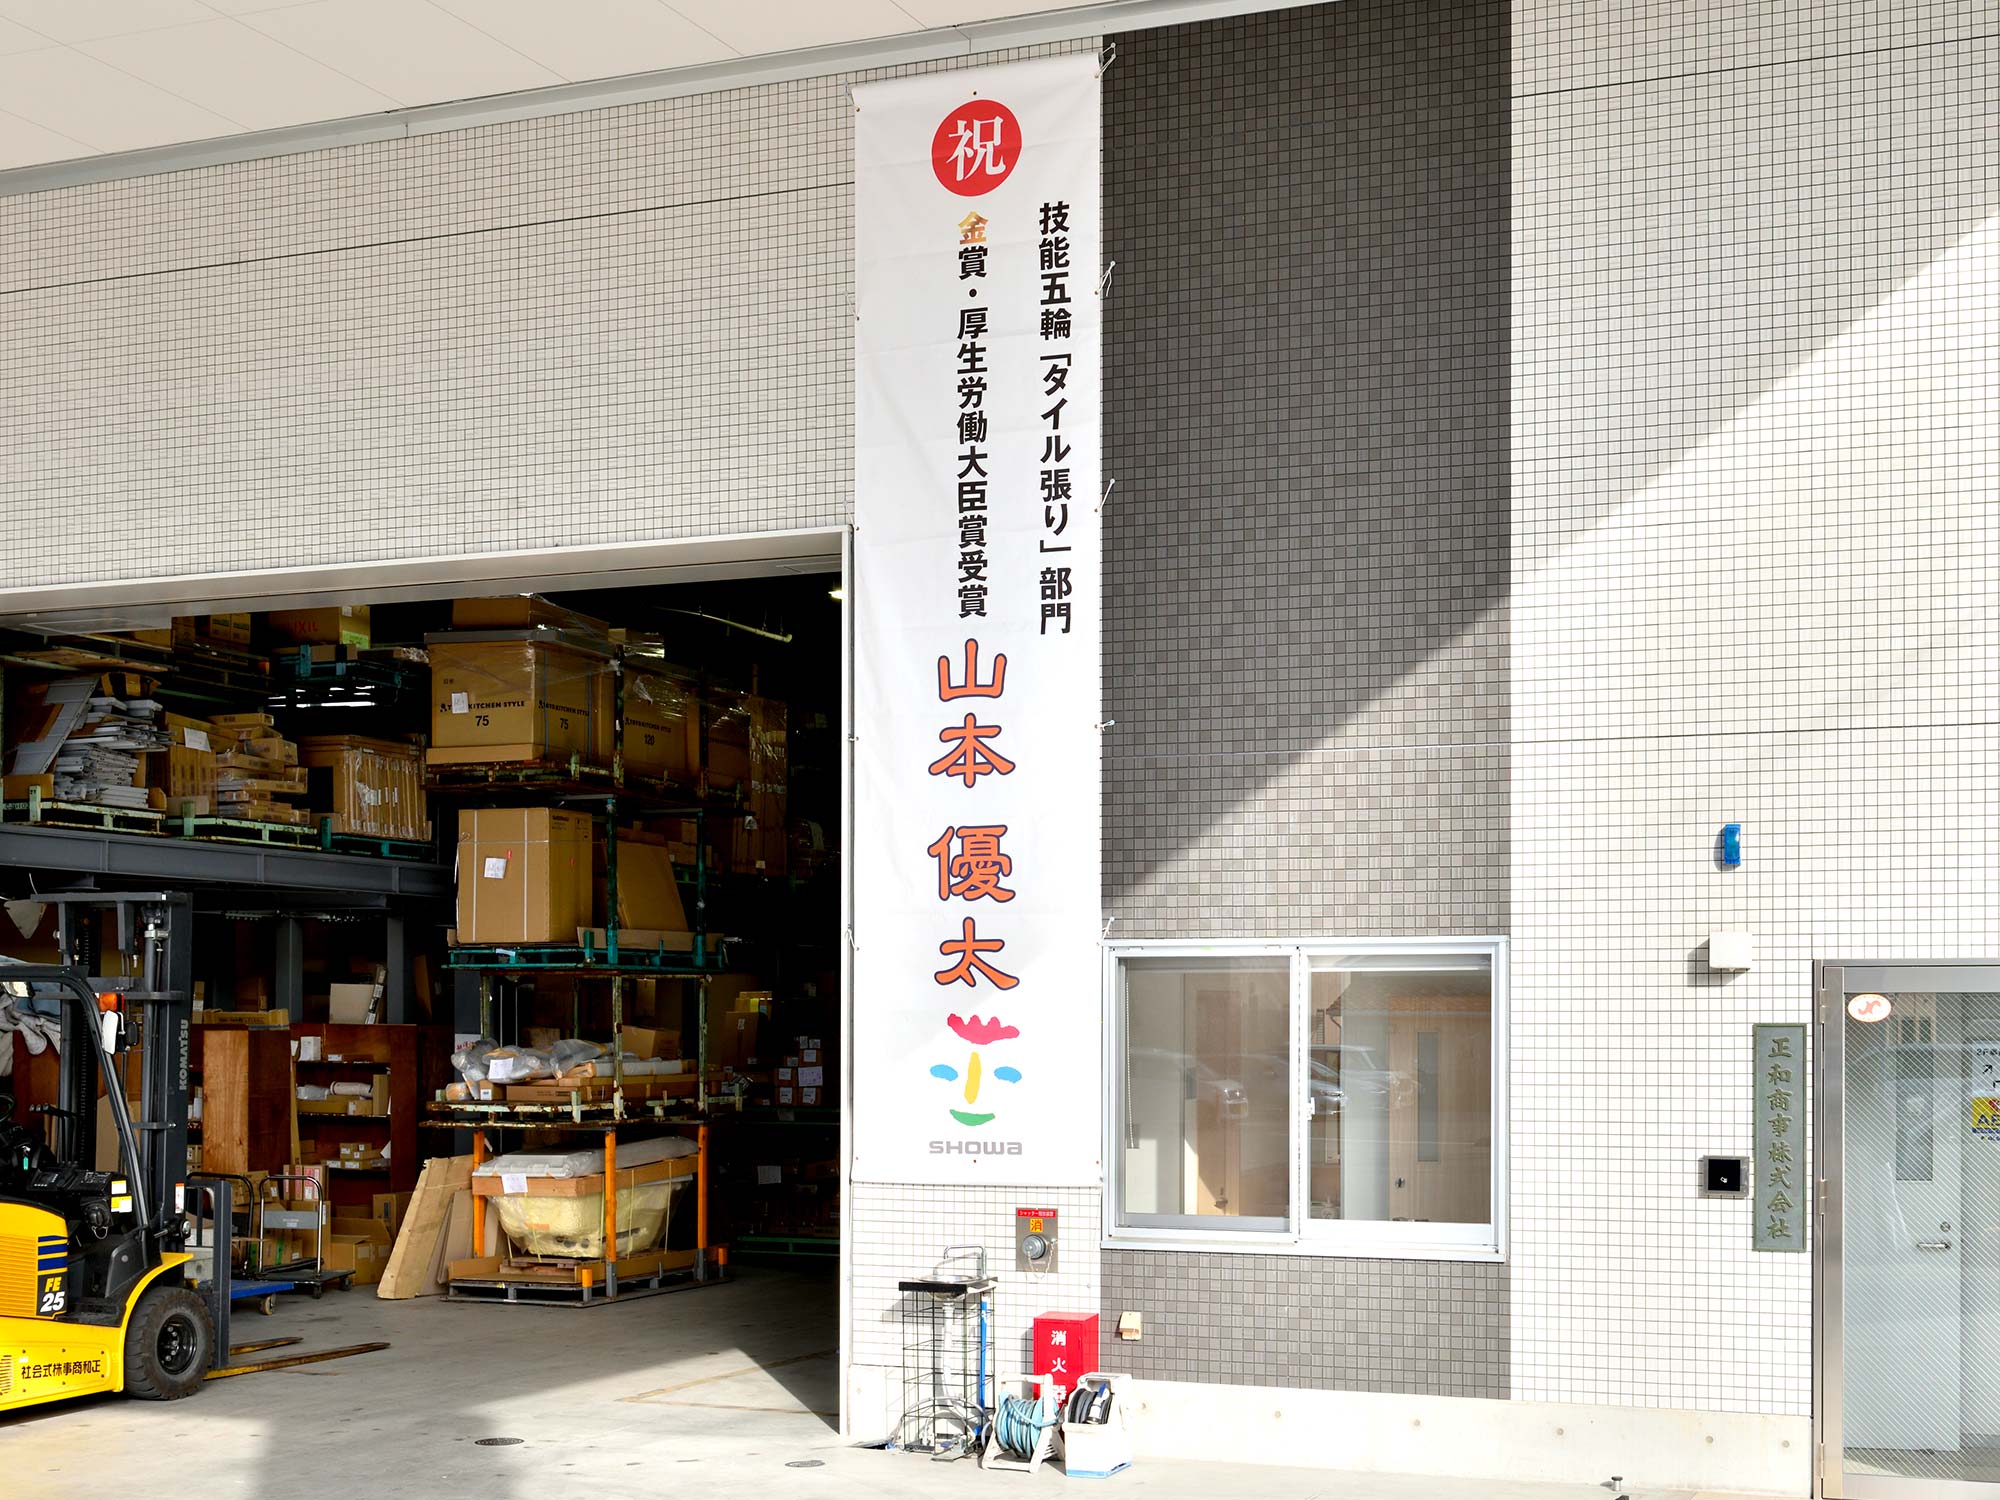 松山営業所に掲げられた垂れ幕は、お得意様から金賞受賞のお祝いにいただいたもの。